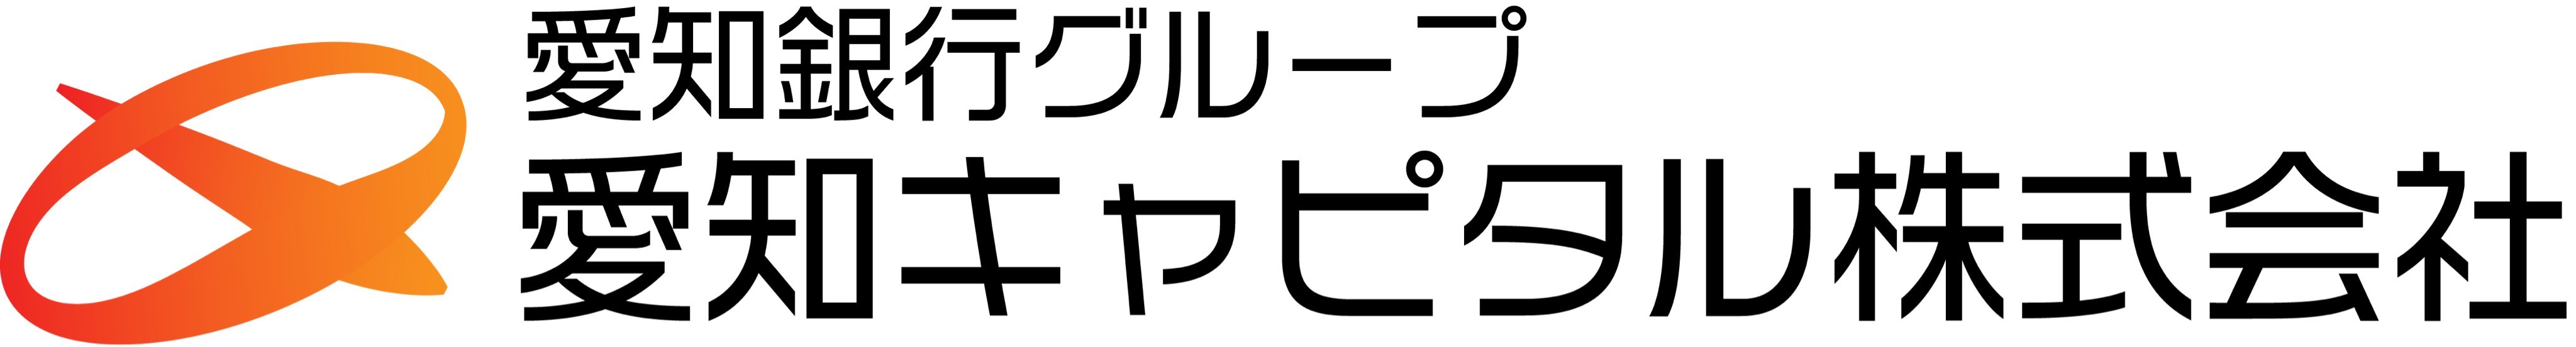 愛知キャピタル株式会社のロゴ